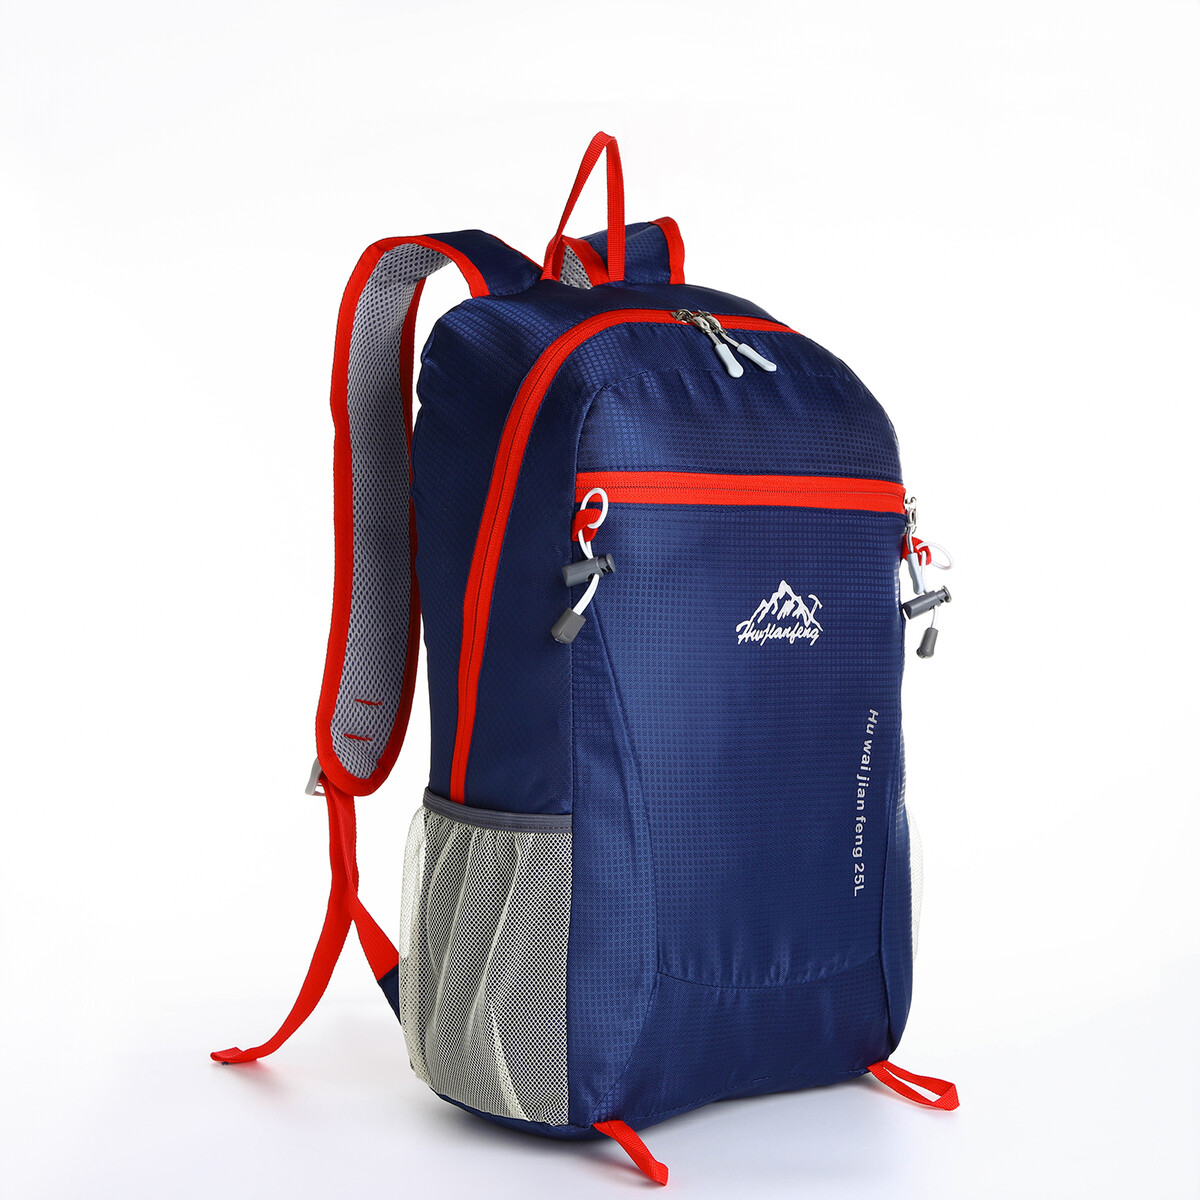 Рюкзак туристический 25л, складной, водонепроницаемый, на молнии, 4 кармана, цвет синий рюкзак nonstopika action бирюзовый складной